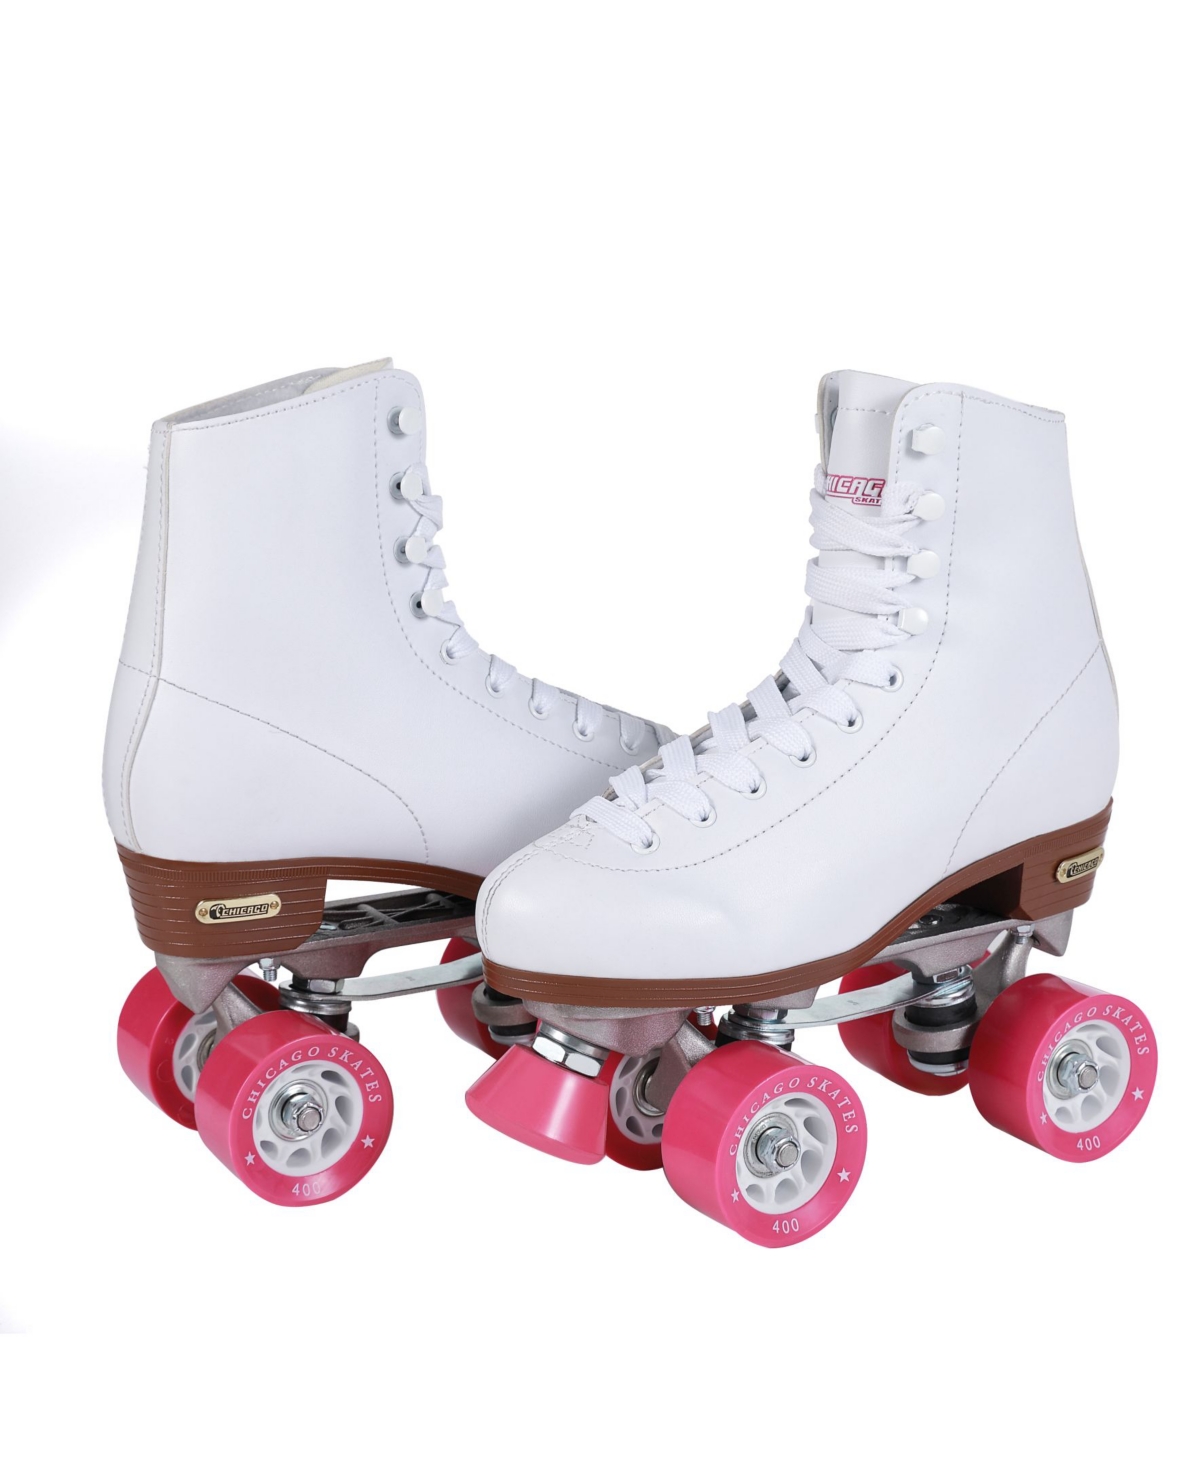 Women's Rink Roller Skates - Size 9 - White